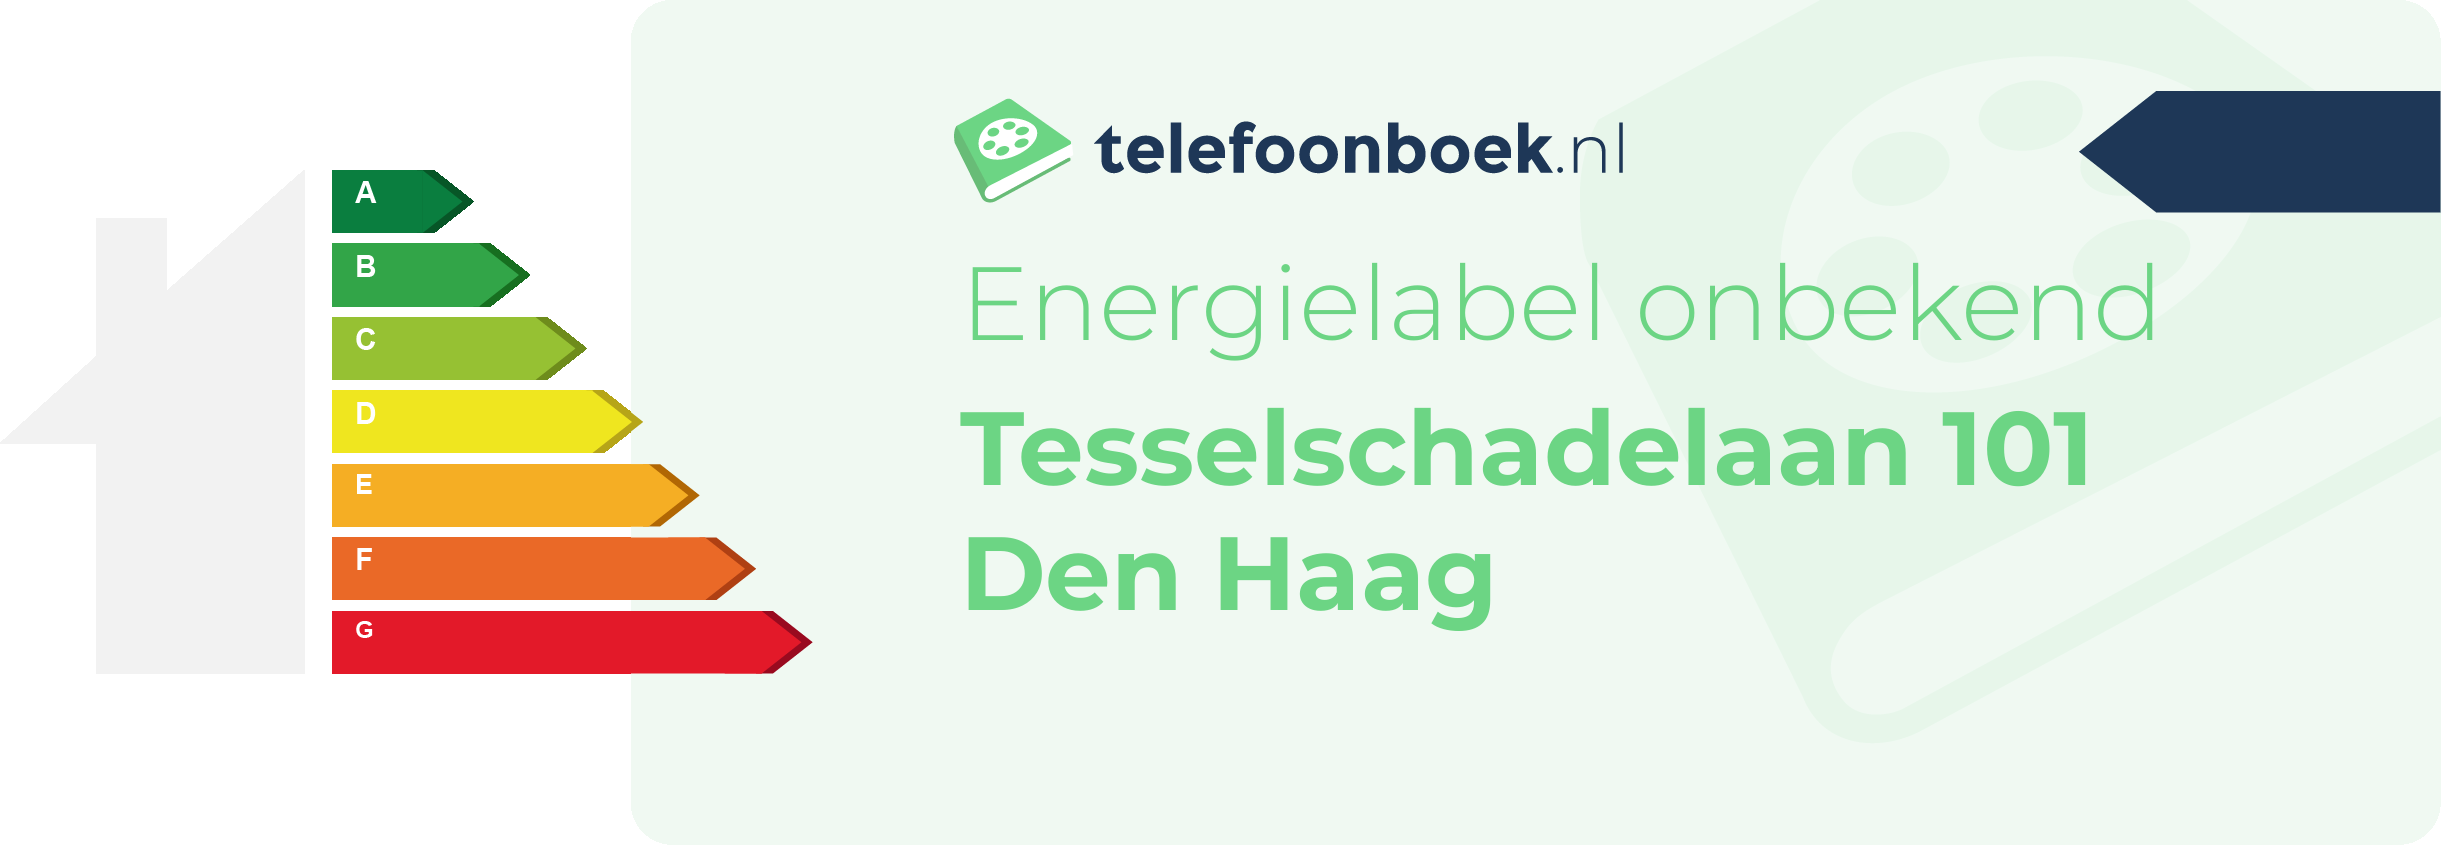 Energielabel Tesselschadelaan 101 Den Haag